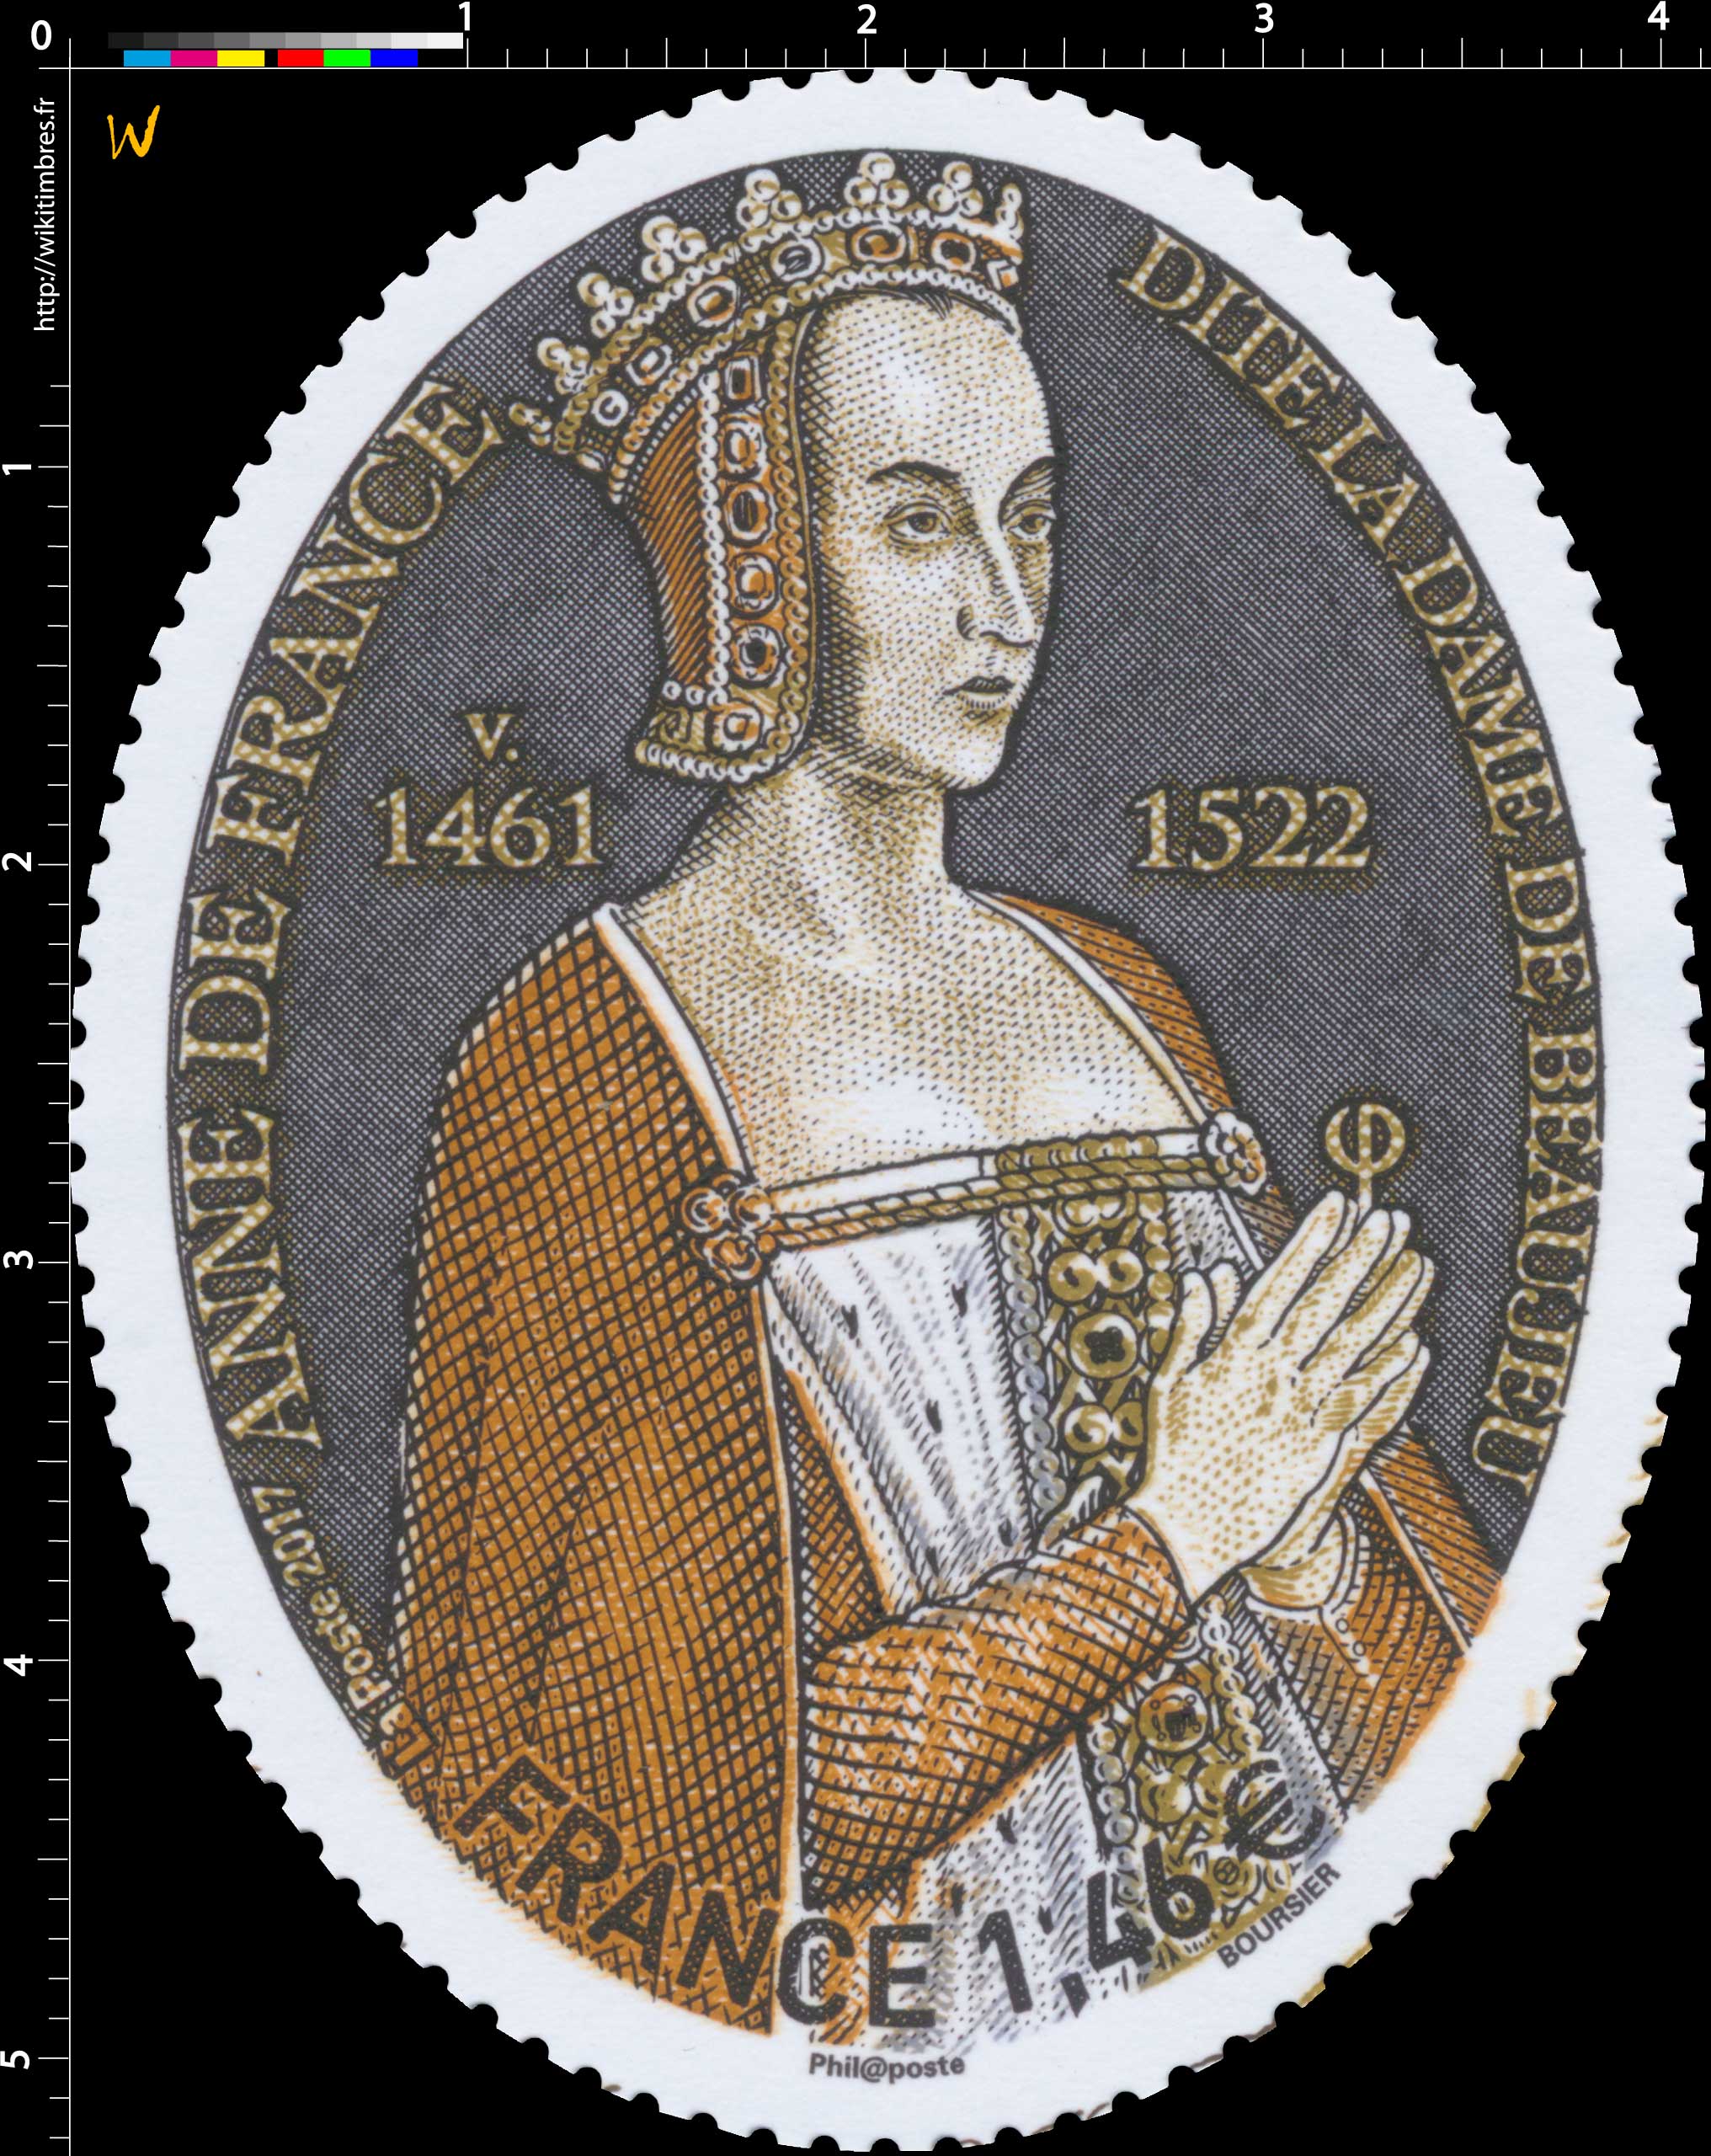 2017 Anne de France, dite la dame de Beaujeu v. 1461 - 1522